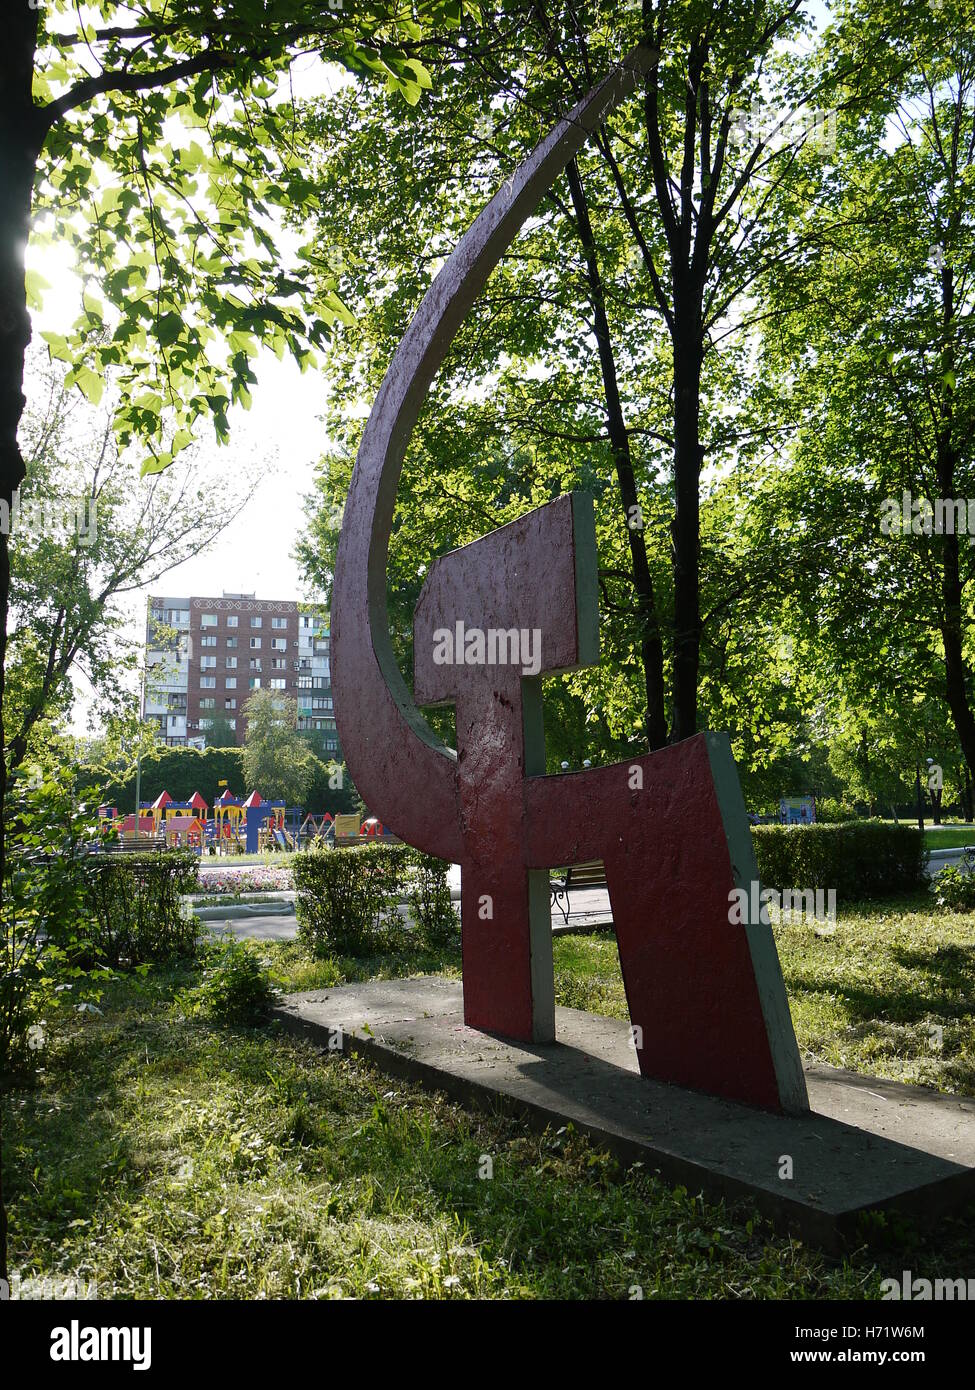 Monument soviétique avec le marteau et la faucille de rester dans Krasnoarmeyisk (armée rouge), une petite ville de l'Est de l'Ukraine Banque D'Images